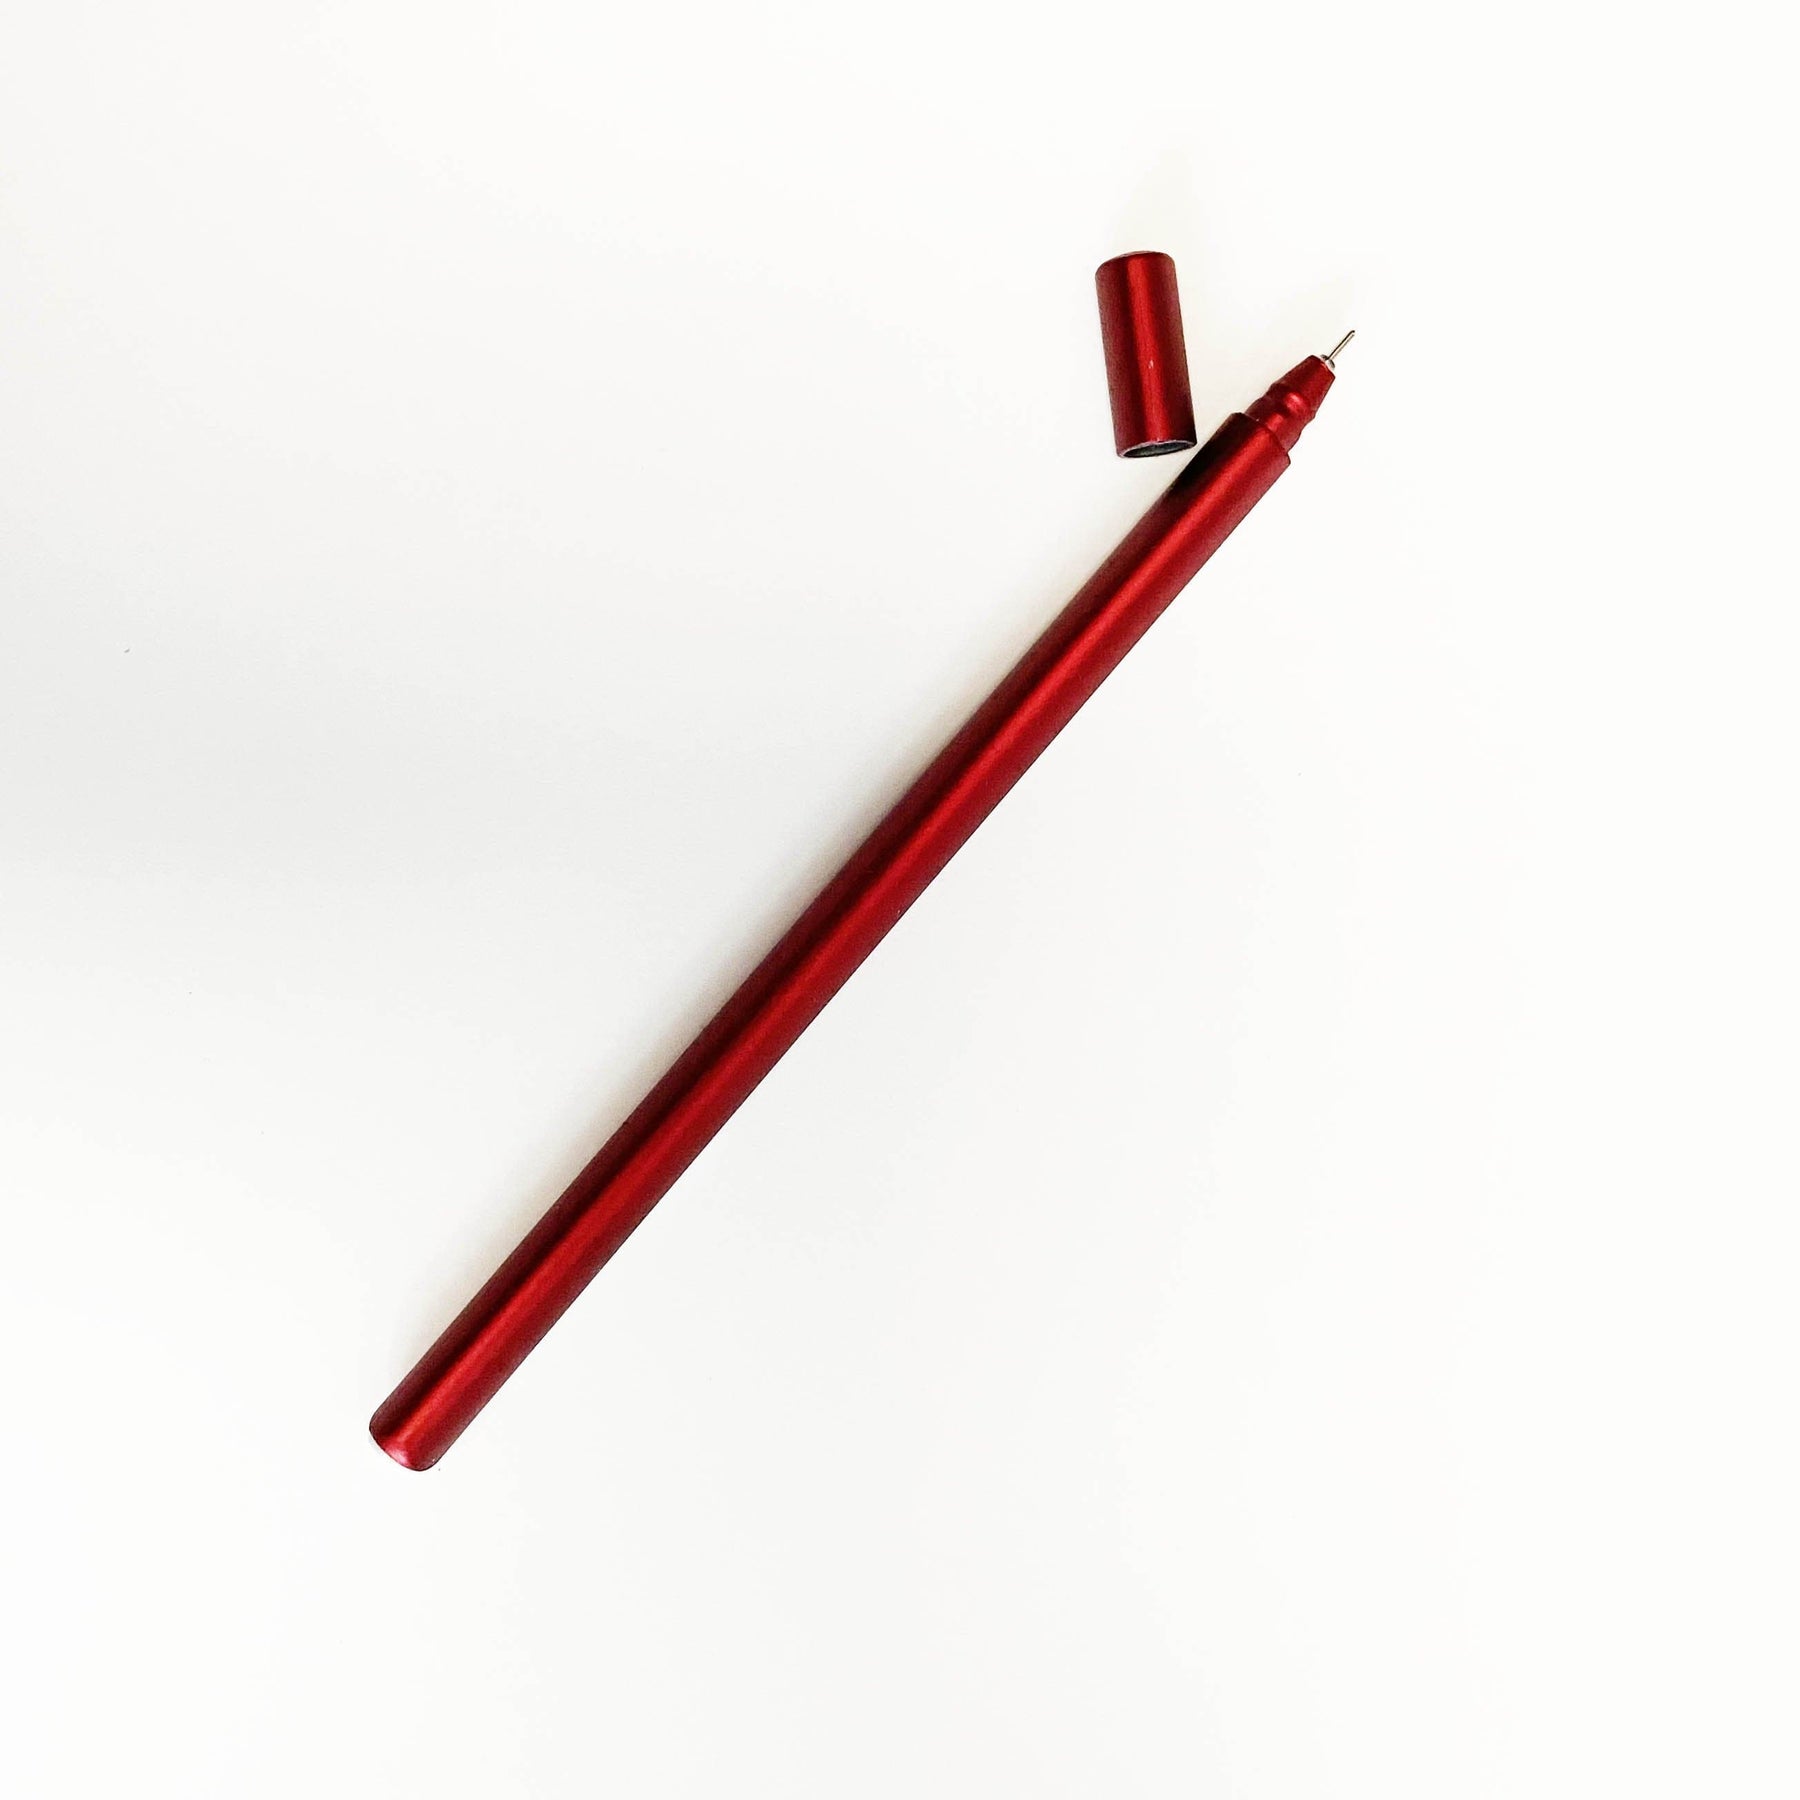 Slim Optic Rollerball Pen